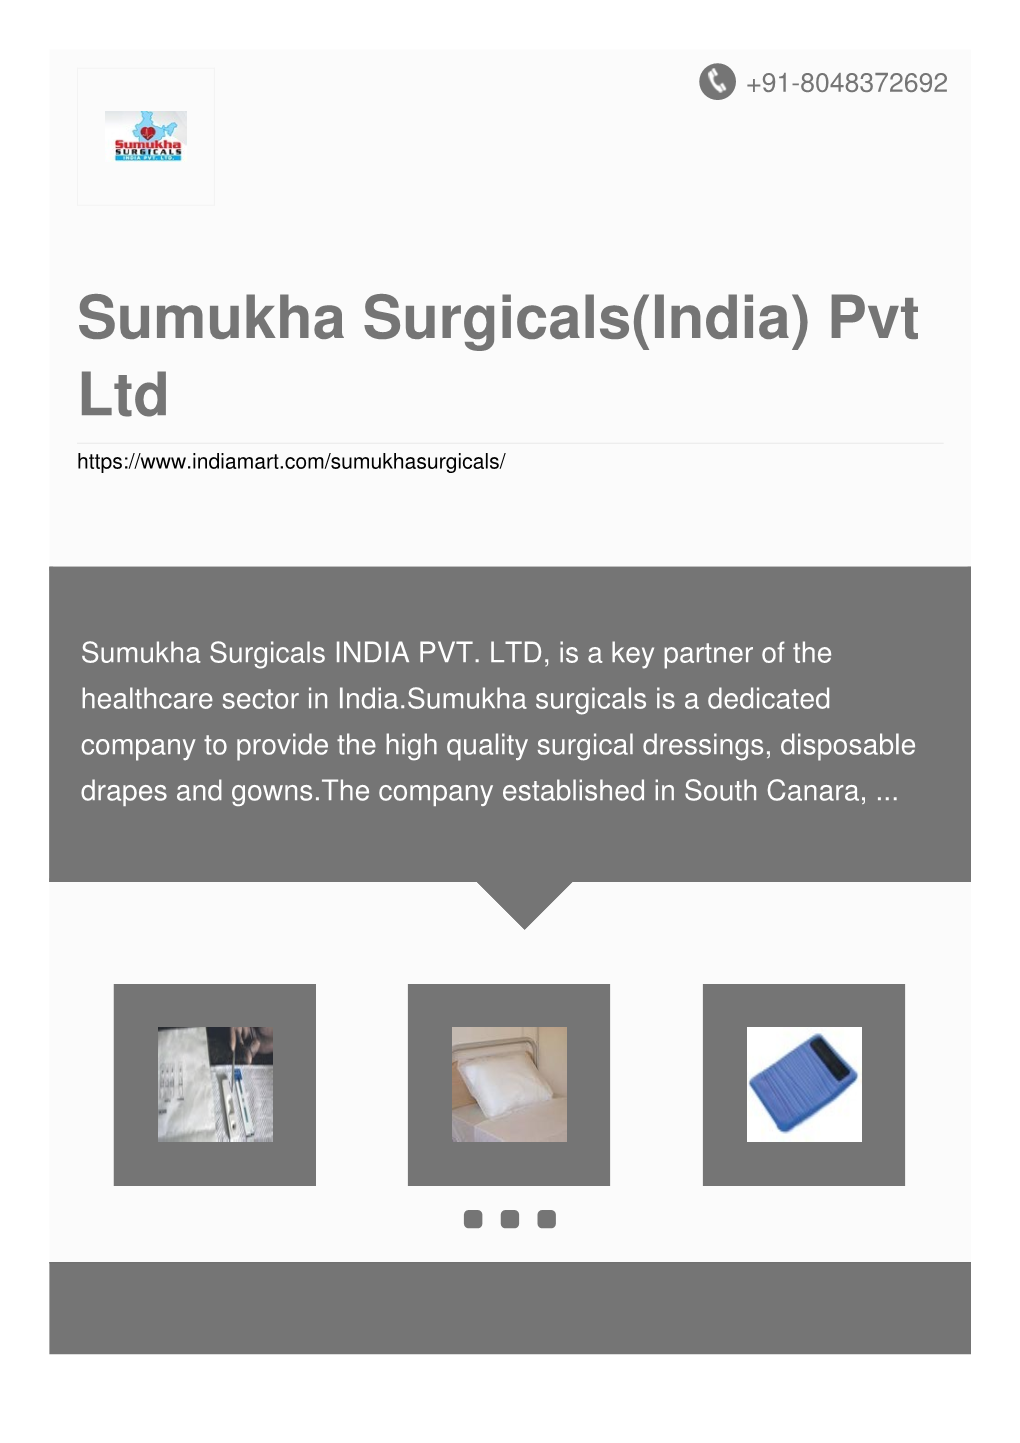 Sumukha Surgicals(India) Pvt Ltd